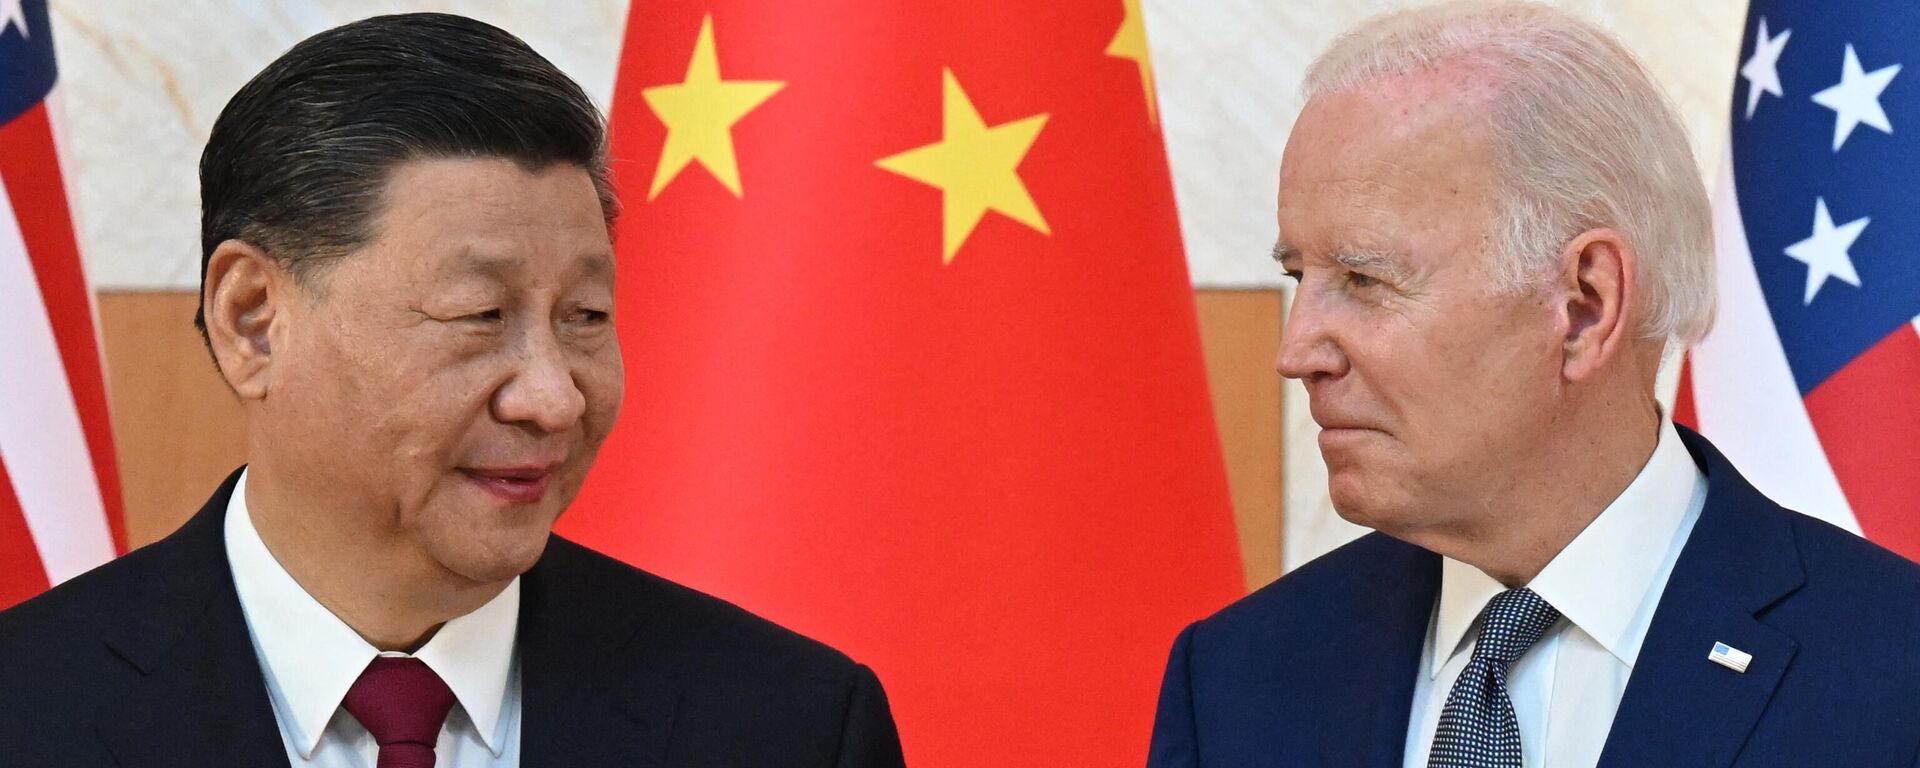 Los presidentes de China y Estados Unidos, de izquierda a derecha: Xi Jinping y Joe Biden. - Sputnik Mundo, 1920, 03.01.2023